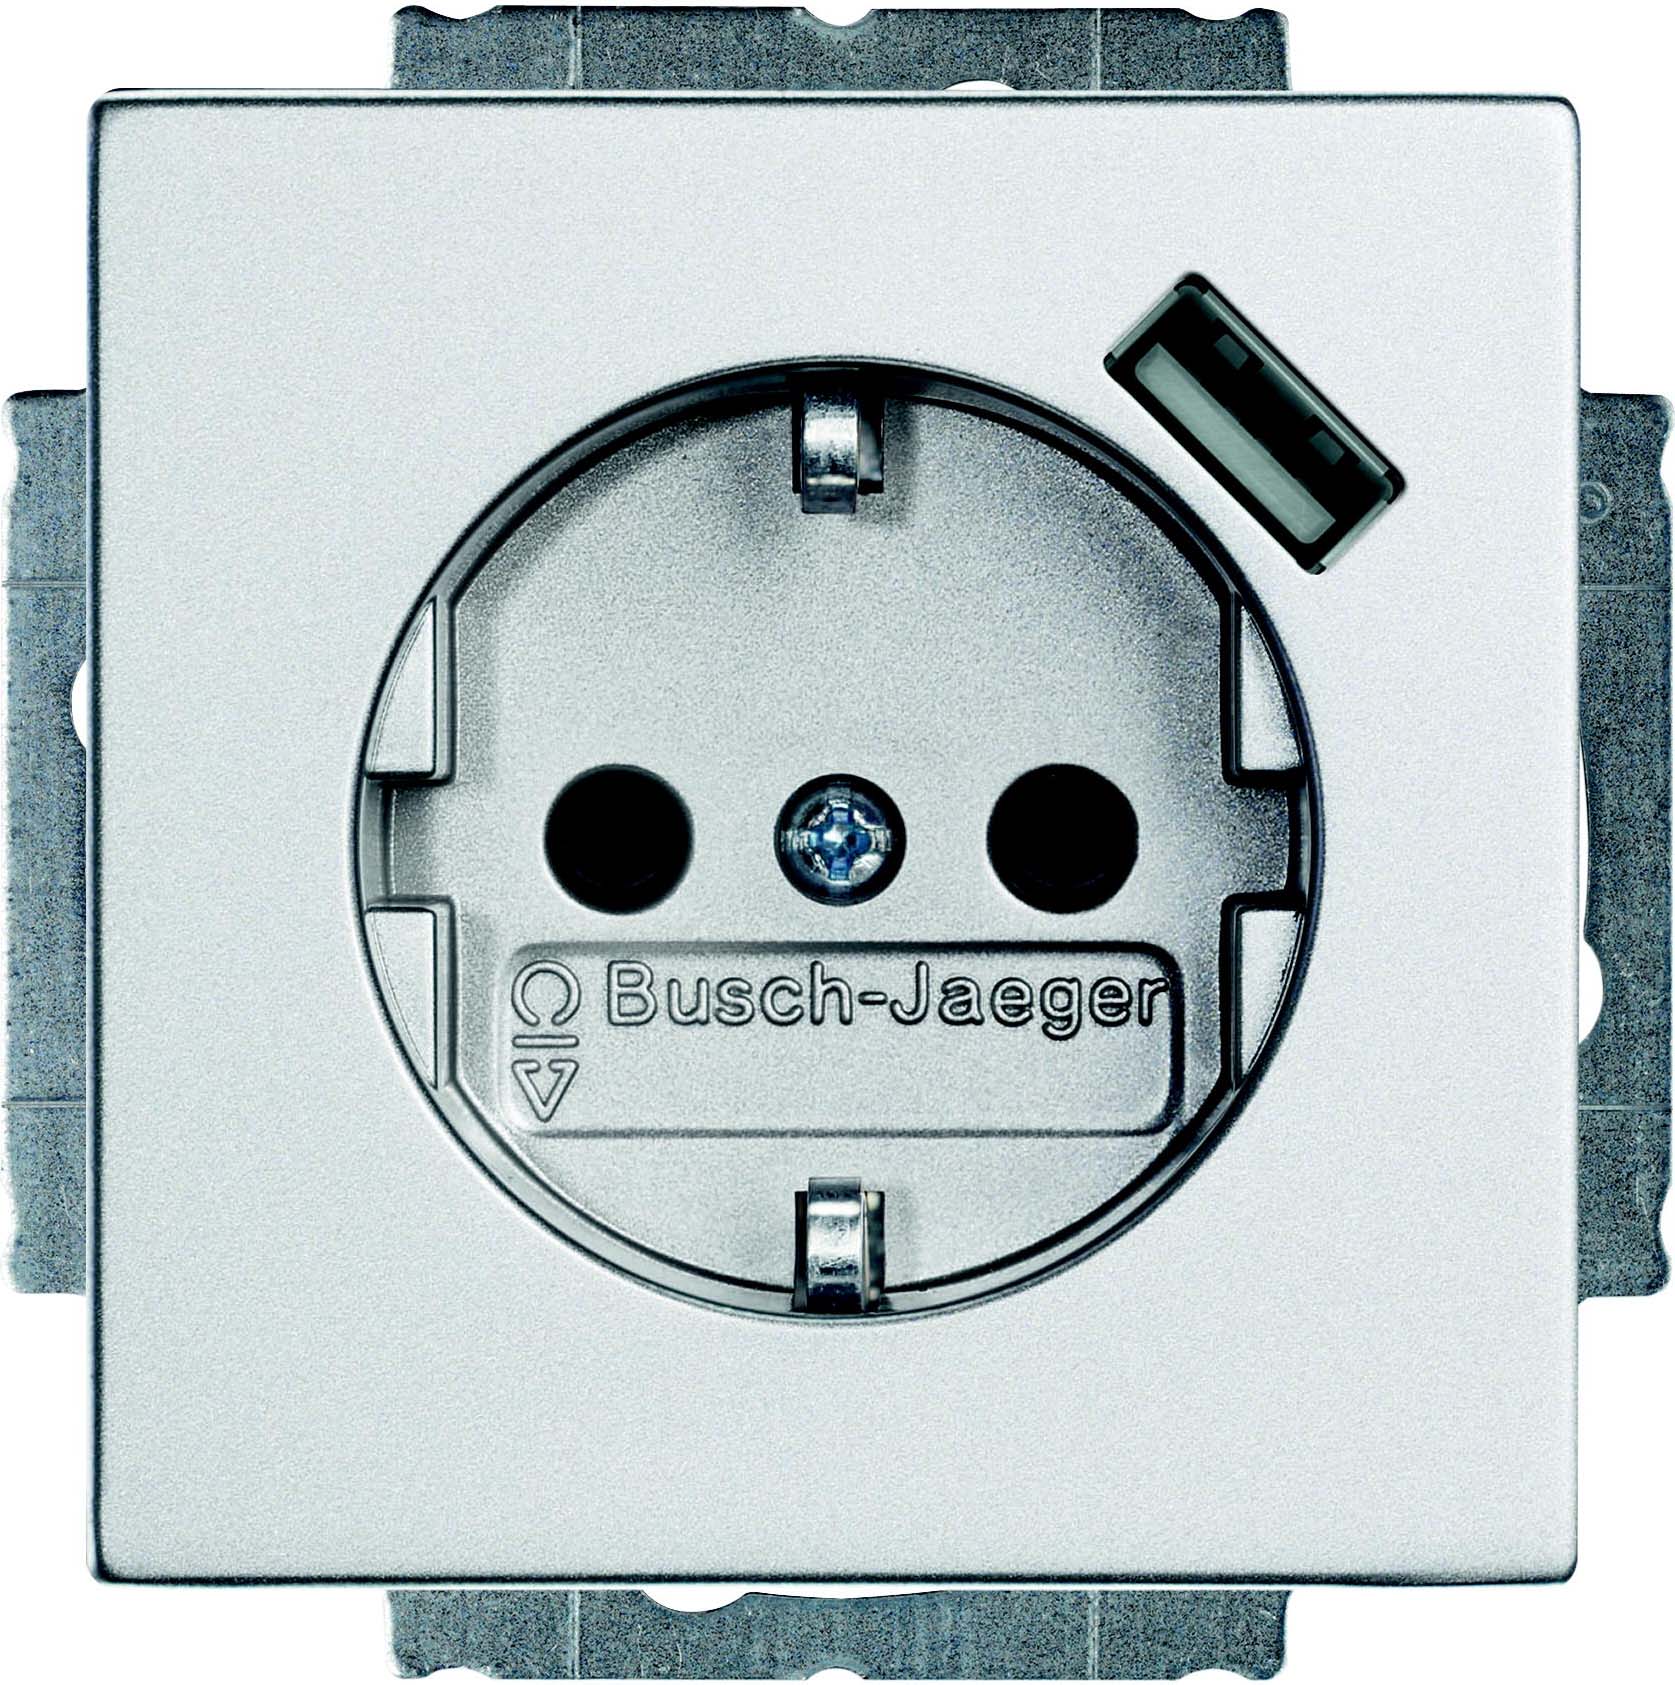 Busch-Jaeger Schuko/USB-Steckdose alusilber 20 EUCBUSB-83 - 2CKA002011A6160